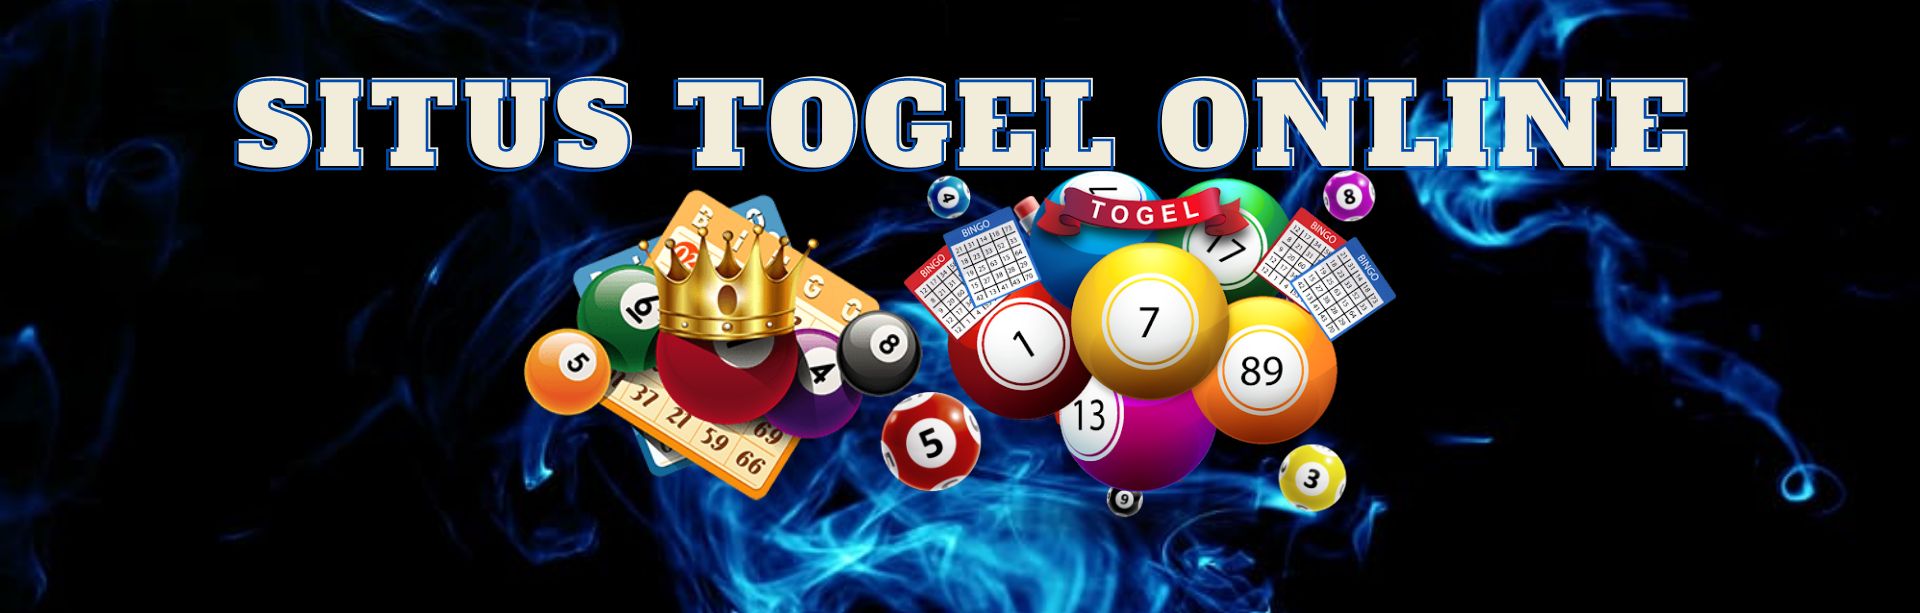 Situs Togel Online Bo Togel Paling Besar Agen Sah Togel Online